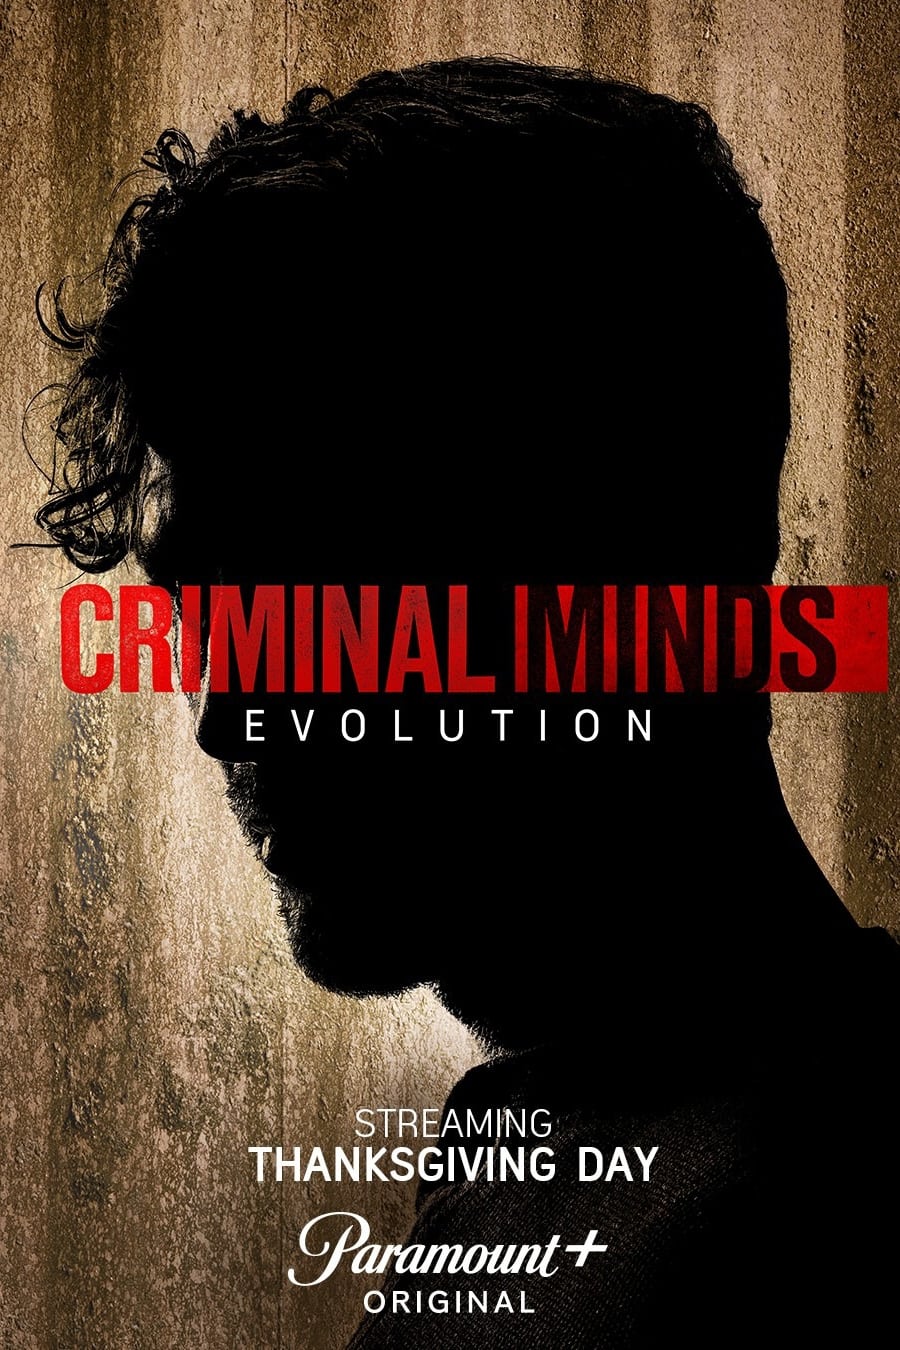 Criminal Minds: Evolution TV Shows About Criminology